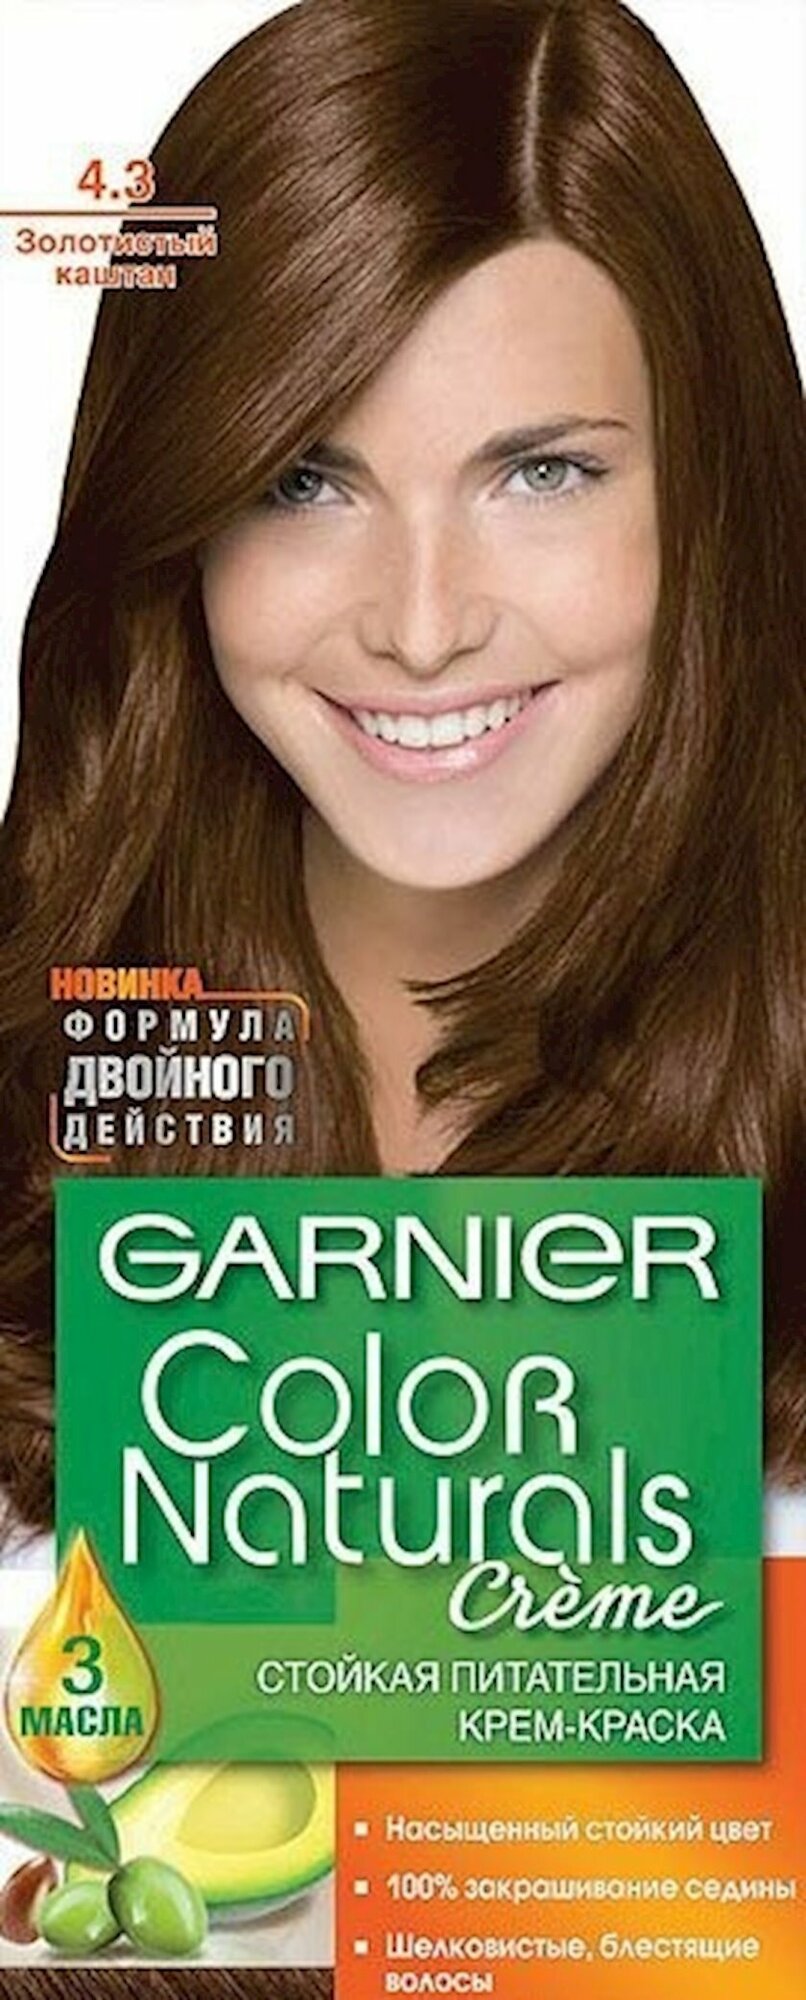 GARNIER Color Naturals стойкая питательная крем-краска для волос4.3 Золотистый каштан